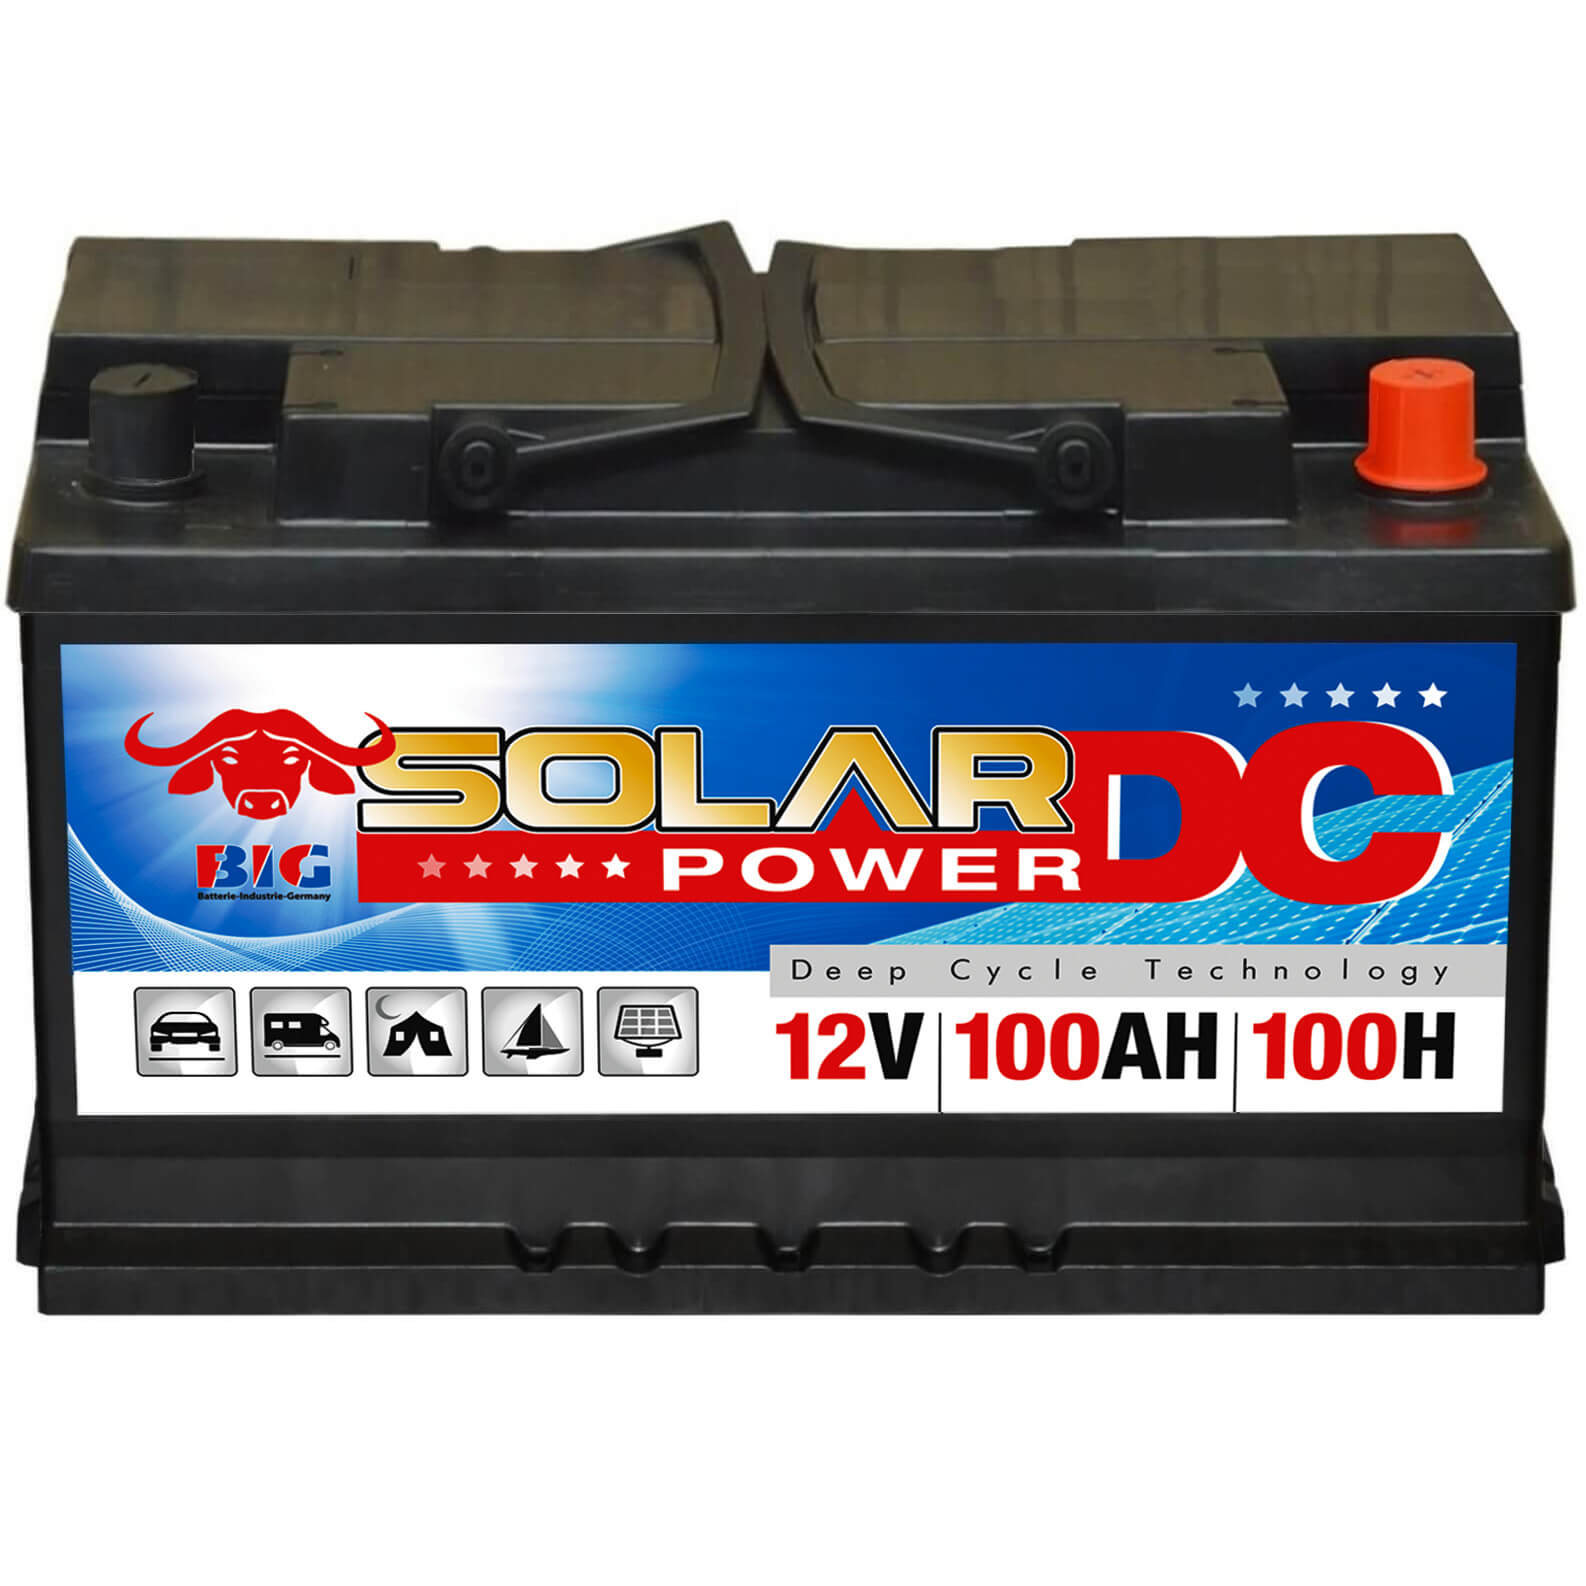 80Ah - 280Ah Solar Batterie Versorgungsbatterie Wohnmobil ( 100